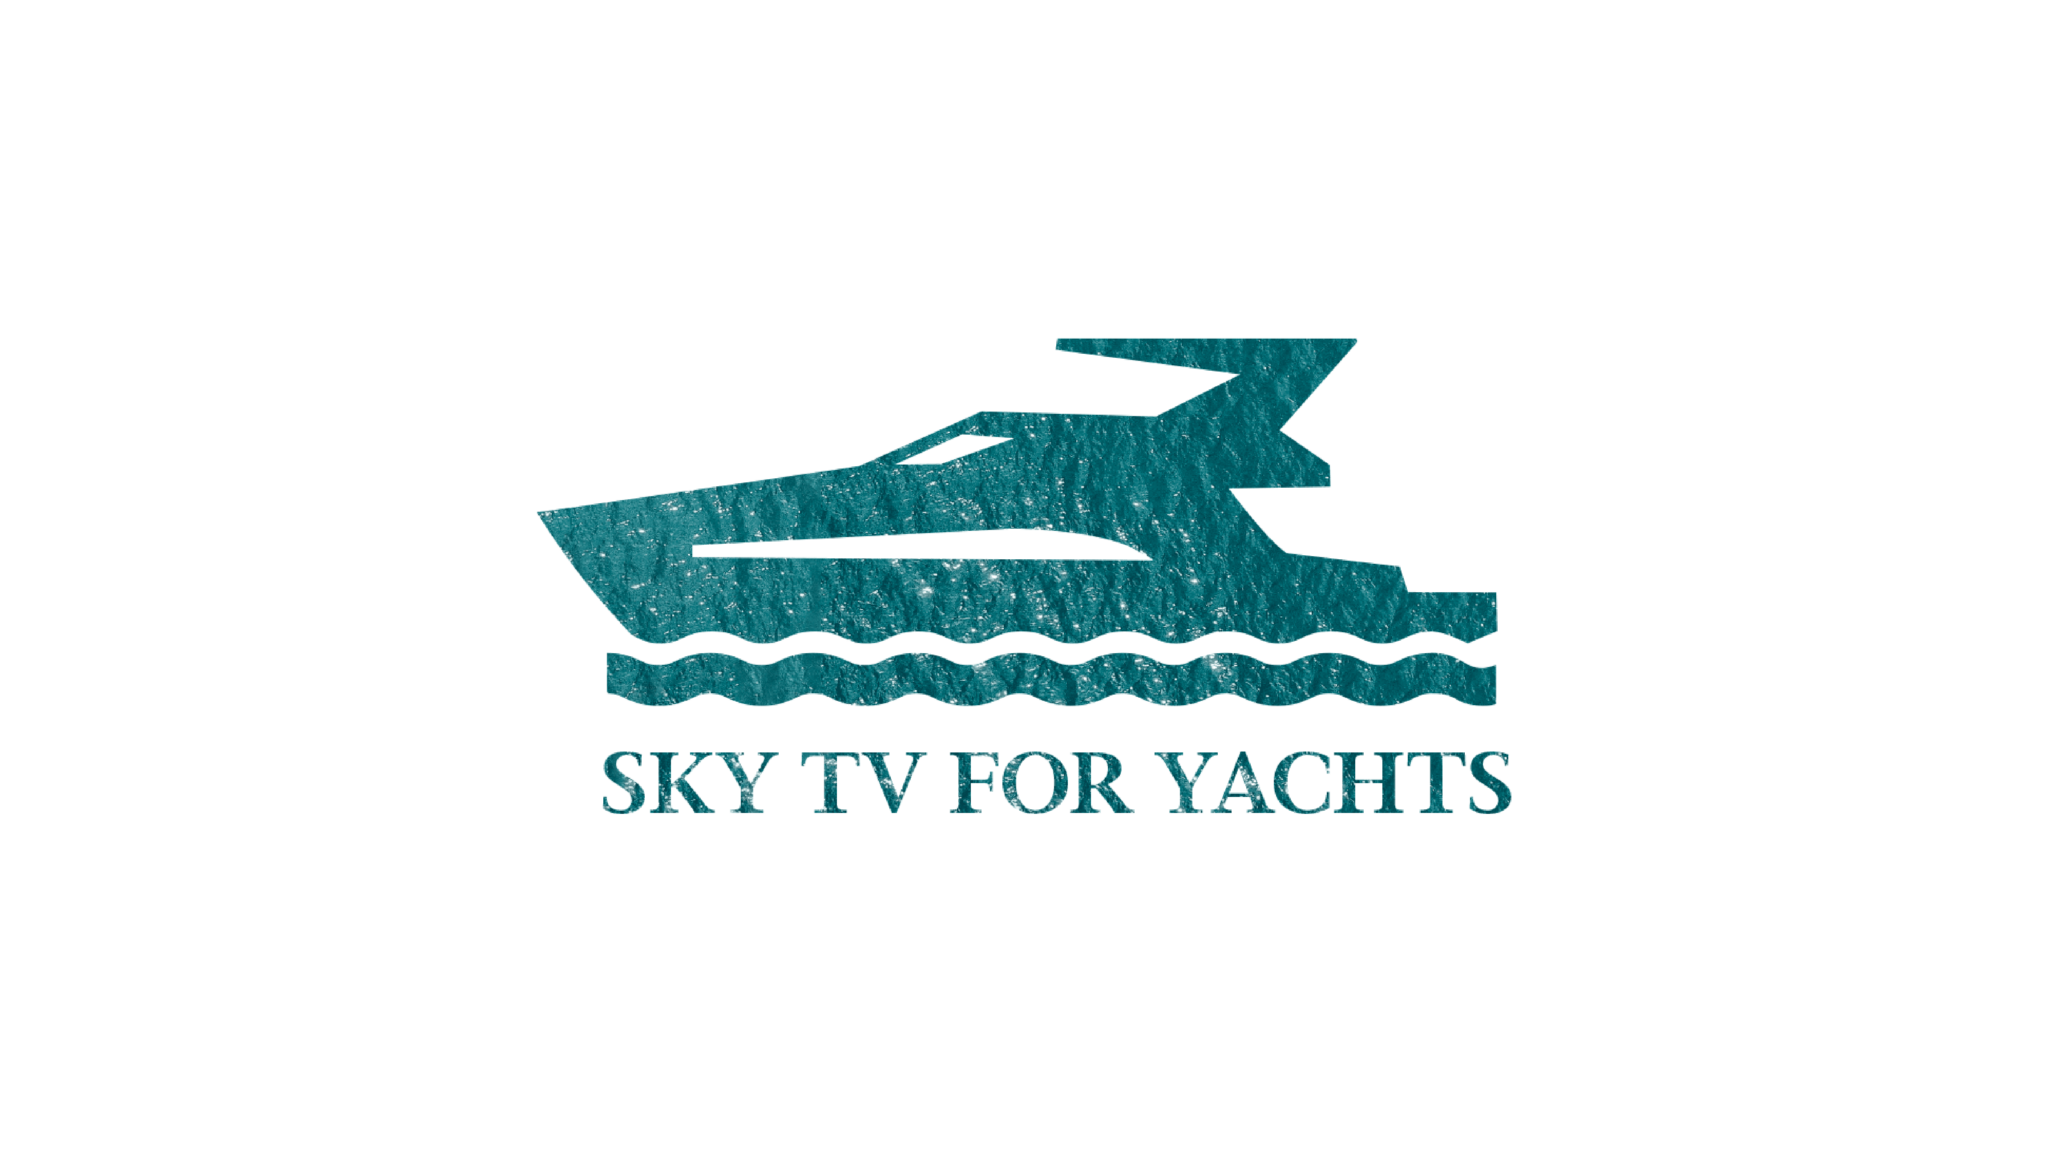 N-Sat Yachts Websites Designs